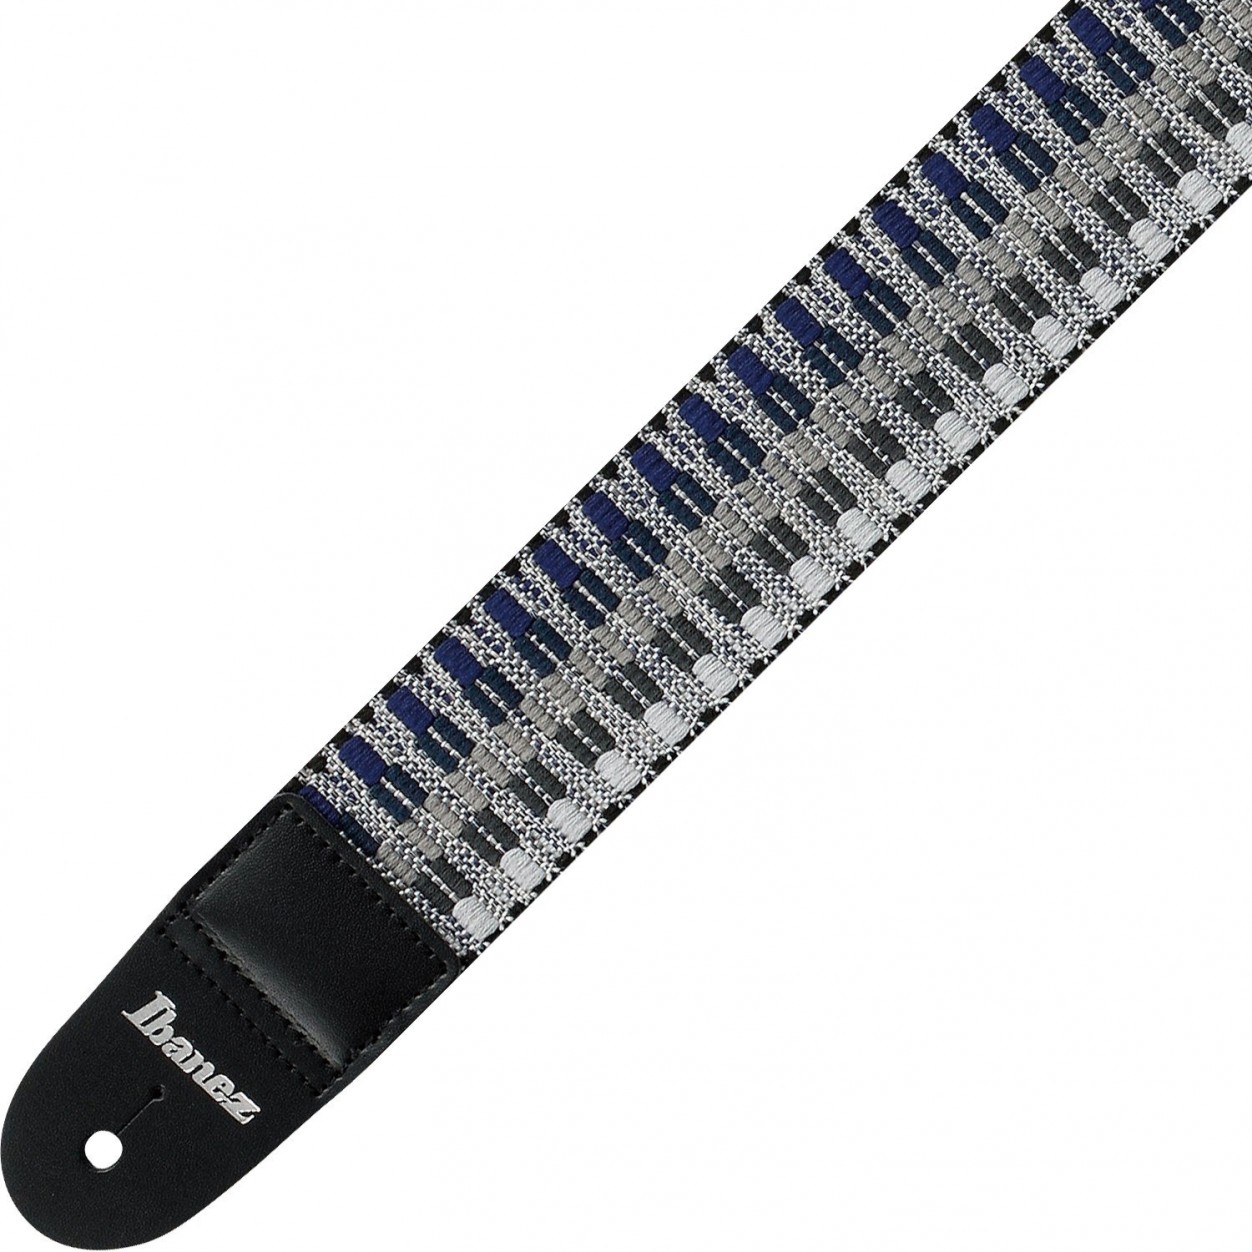 Ibanez GSB50-C3 плетеный гитарный ремень, цвет серый